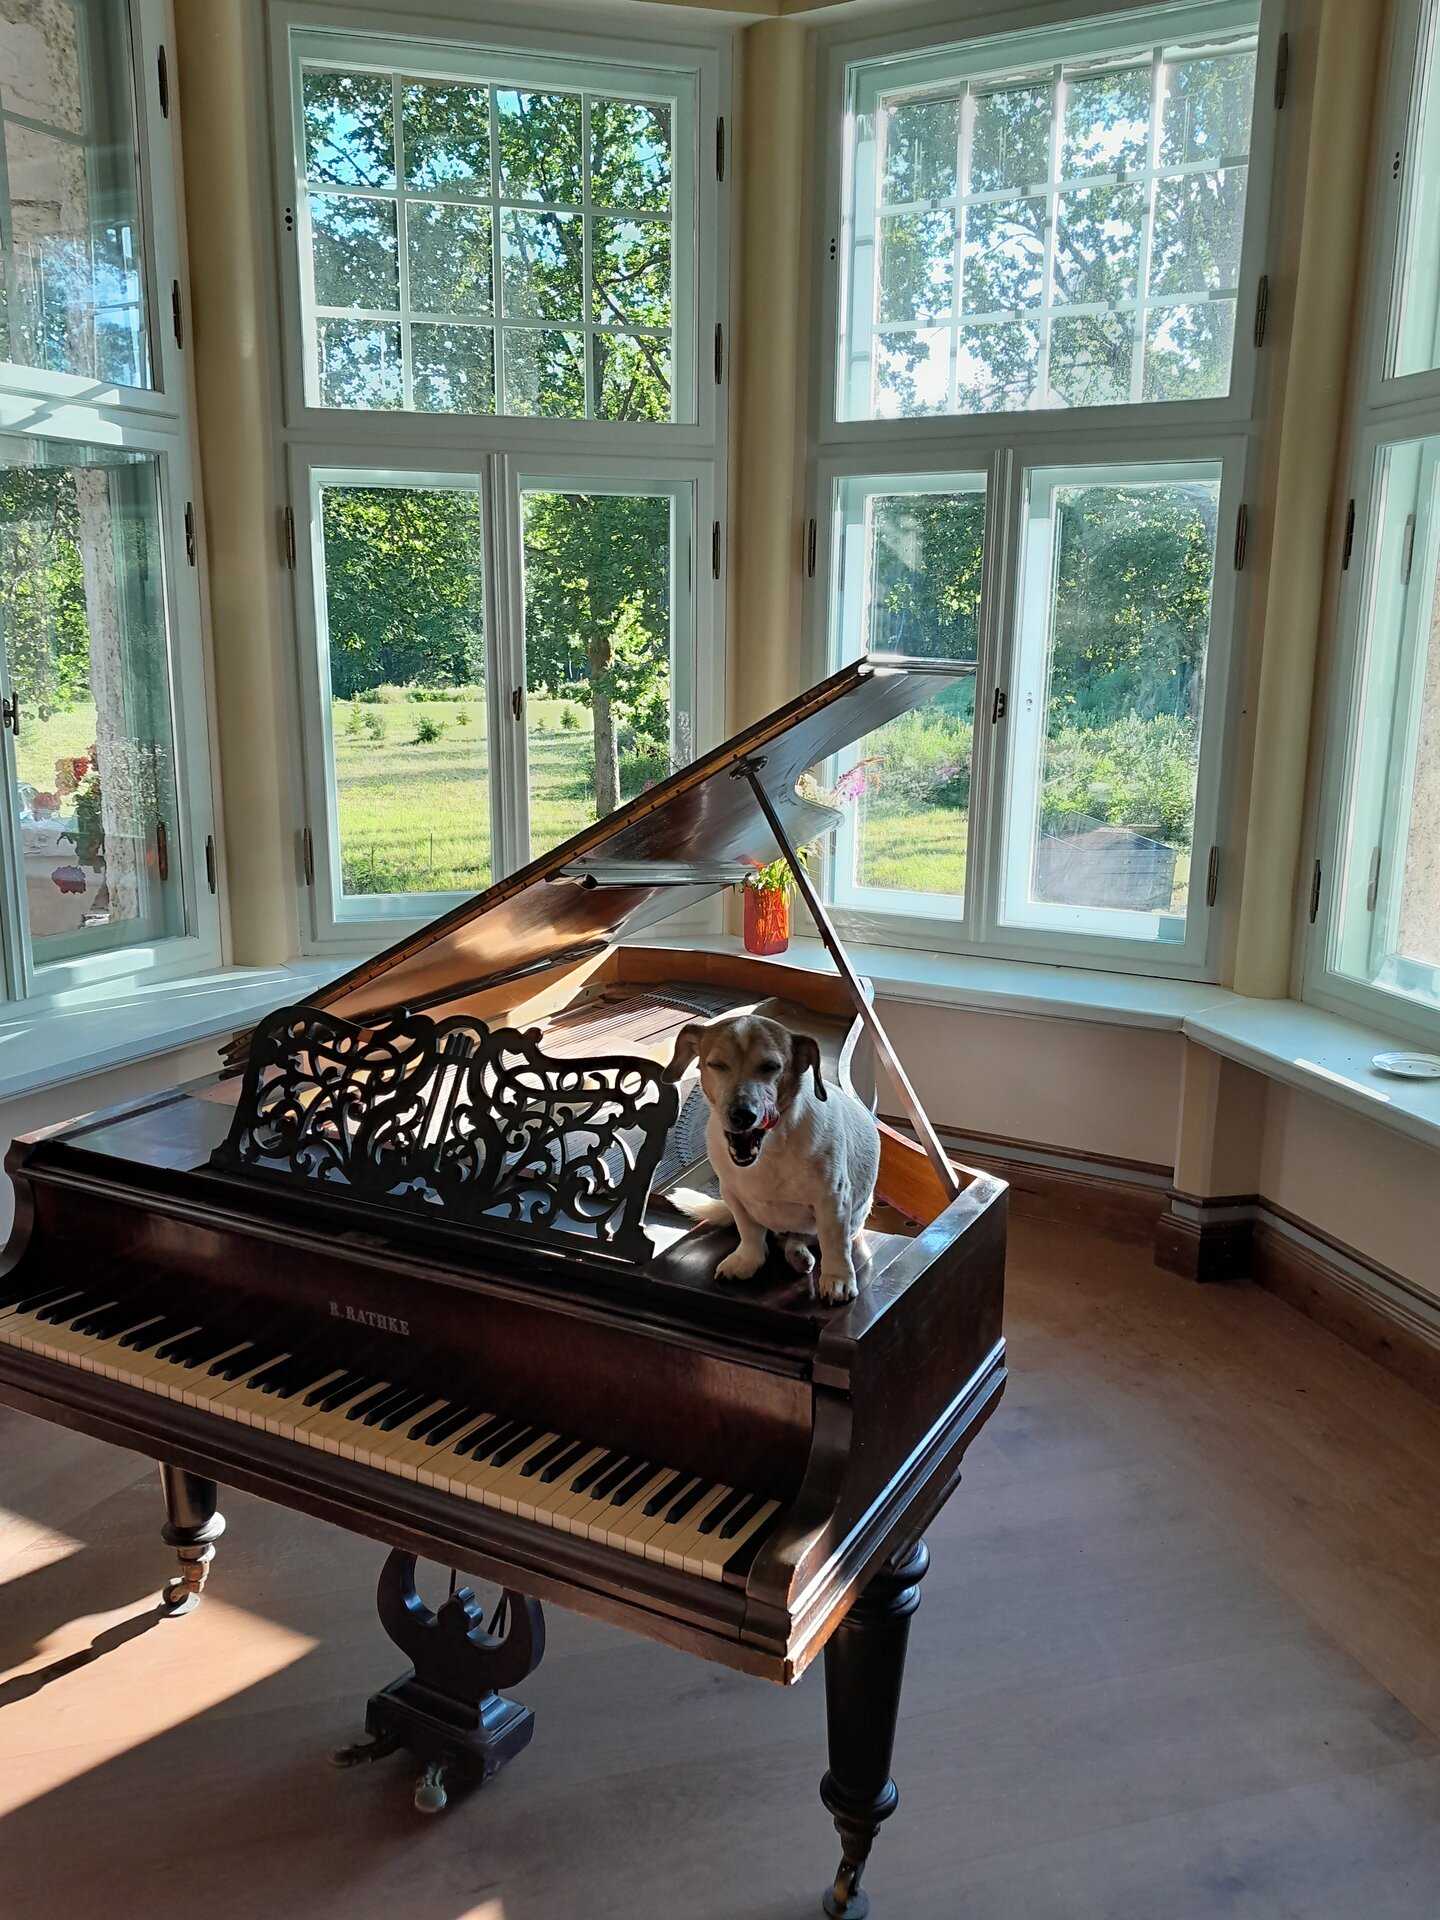 Viron kansallinen pianomuseo